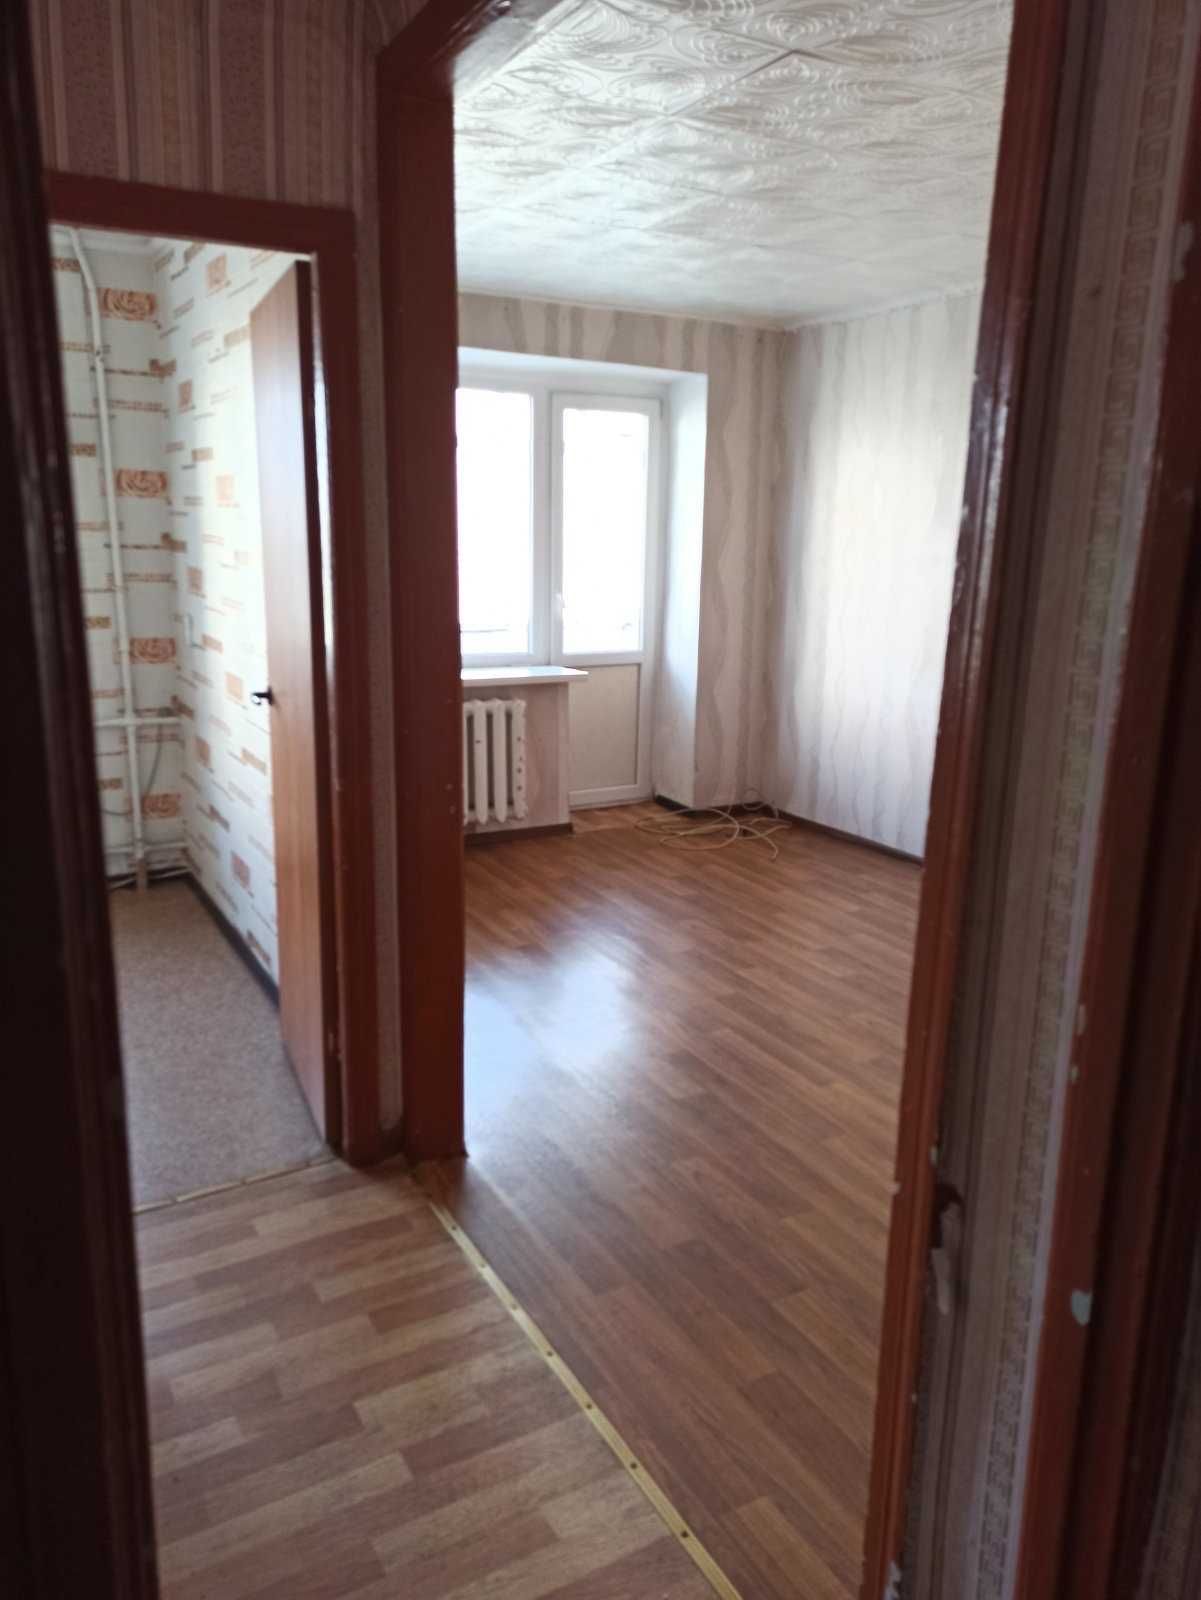 Продам 2-х кімнатну квартиру у центрі міста Кременчук.